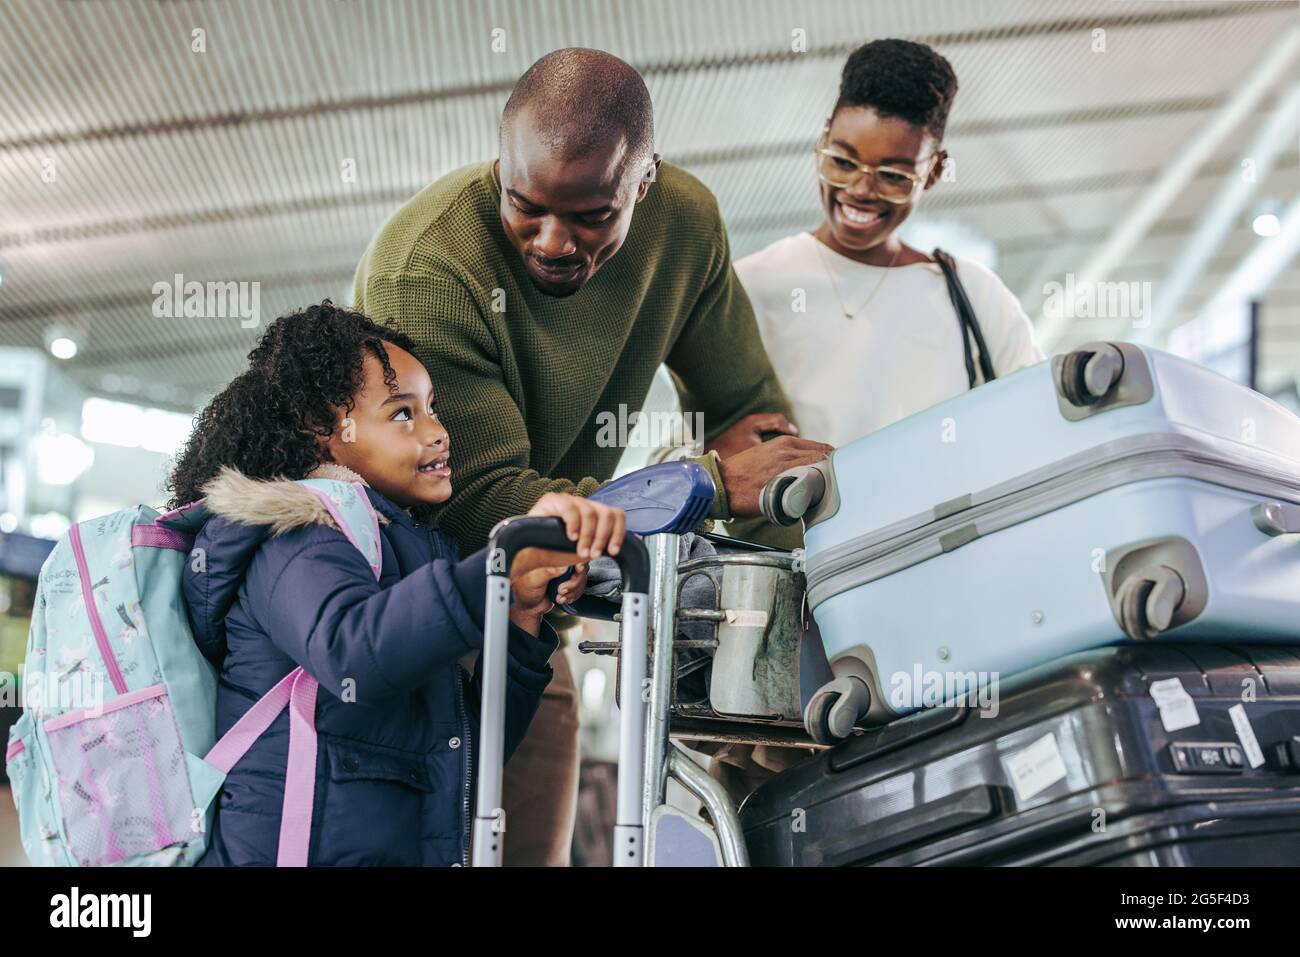 Ein Touristenpaar schaute seine Tochter an, während es mit Gepäck am Flughafen stand. Afrikanisches Kind im Gespräch mit ihren Eltern am Flughafenterminal. Stockfoto